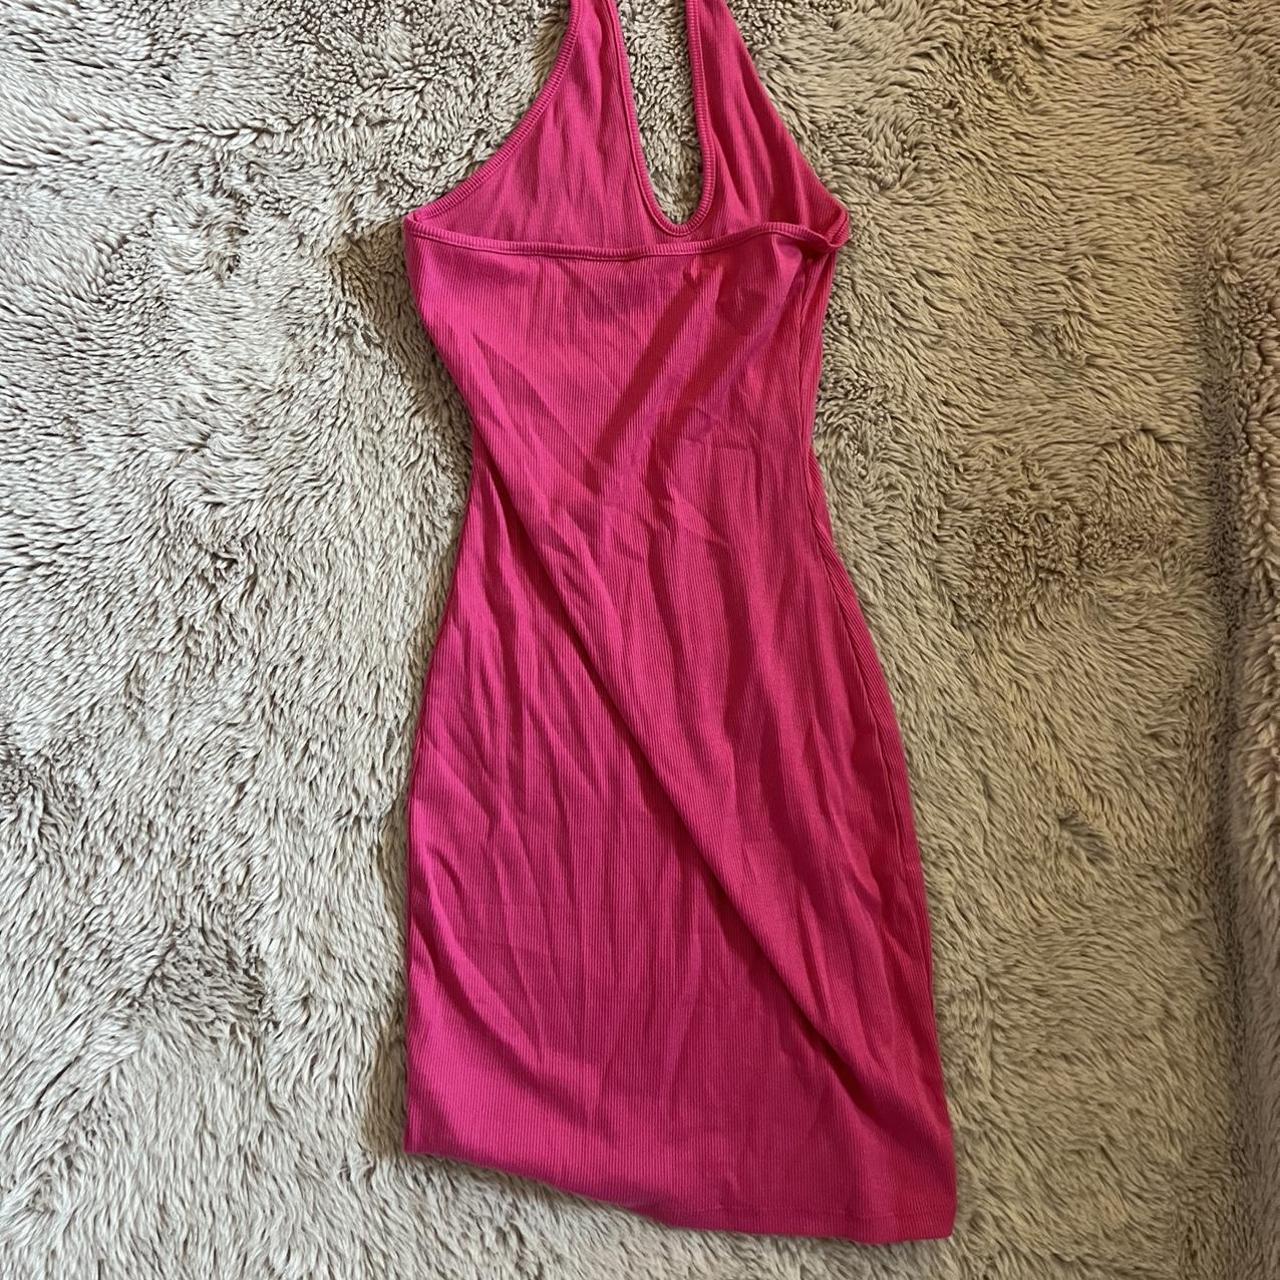 Target Women's Pink Dress | Depop